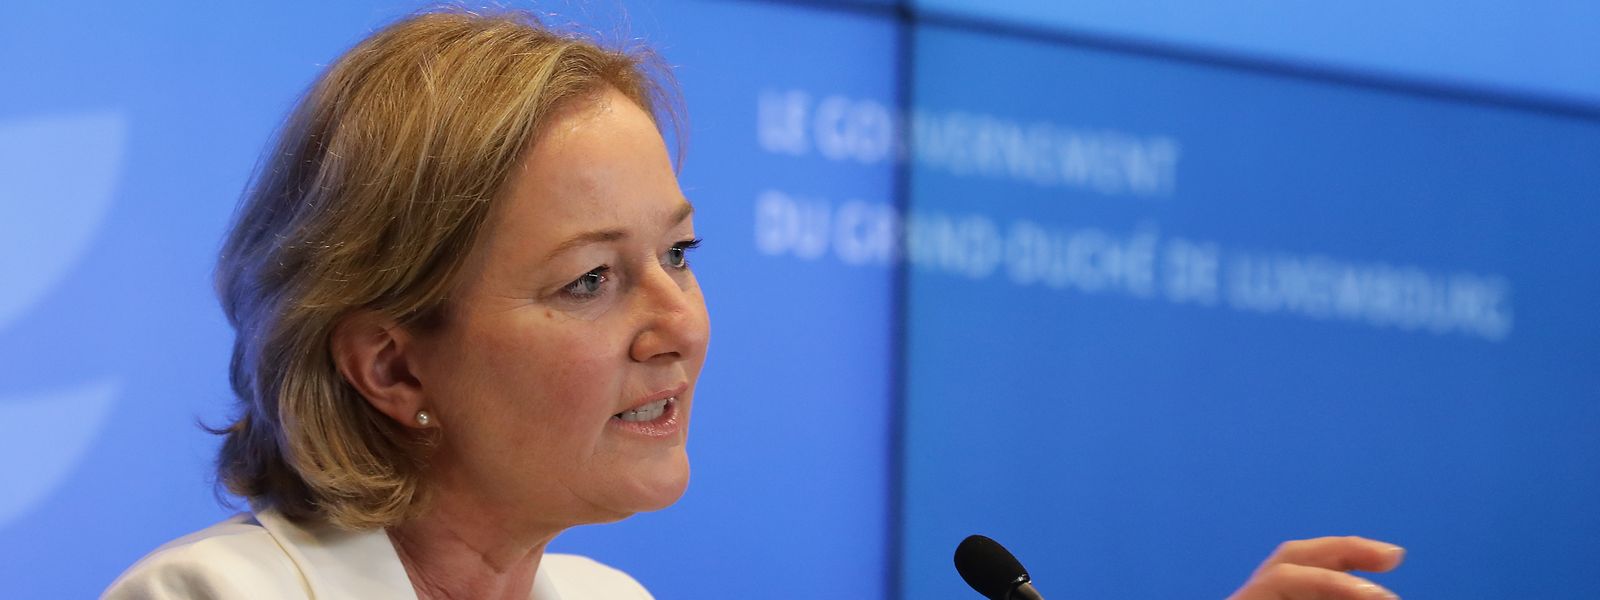 Paulette Lenert, la ministre de la Santé a souligné «la grande responsabilité» dont les citoyens ont fait preuve ces dernières semaines en «respectant bien les gestes barrières».